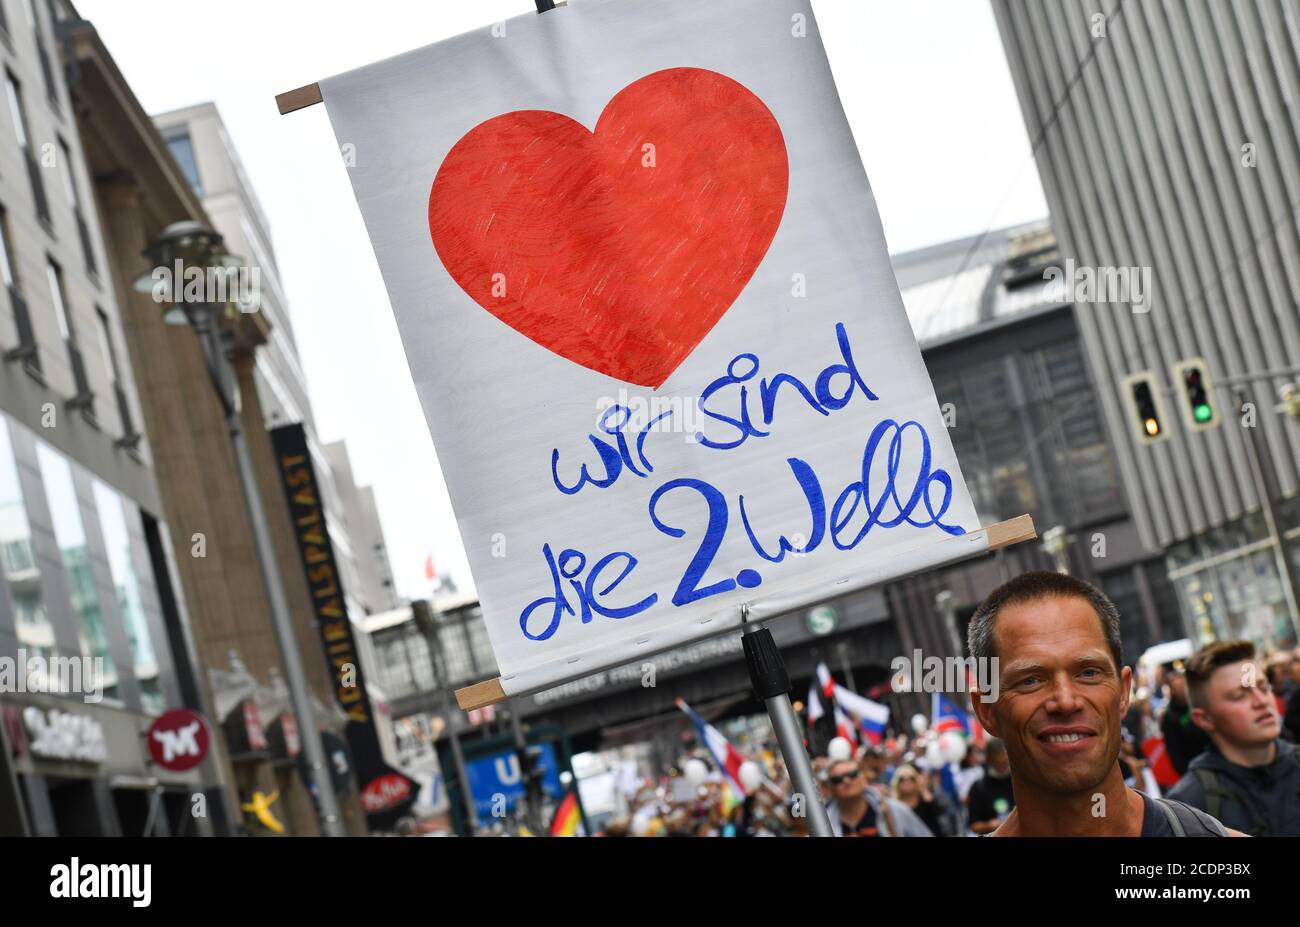 Berlin, Deutschland. August 2020. Ein Teilnehmer hält in der Friedrichstraße bei einer Demonstration gegen die Corona-Maßnahmen ein Schild "Wir sind die 2. Welle". Quelle: Paul Zinken/dpa/Alamy Live News Stockfoto